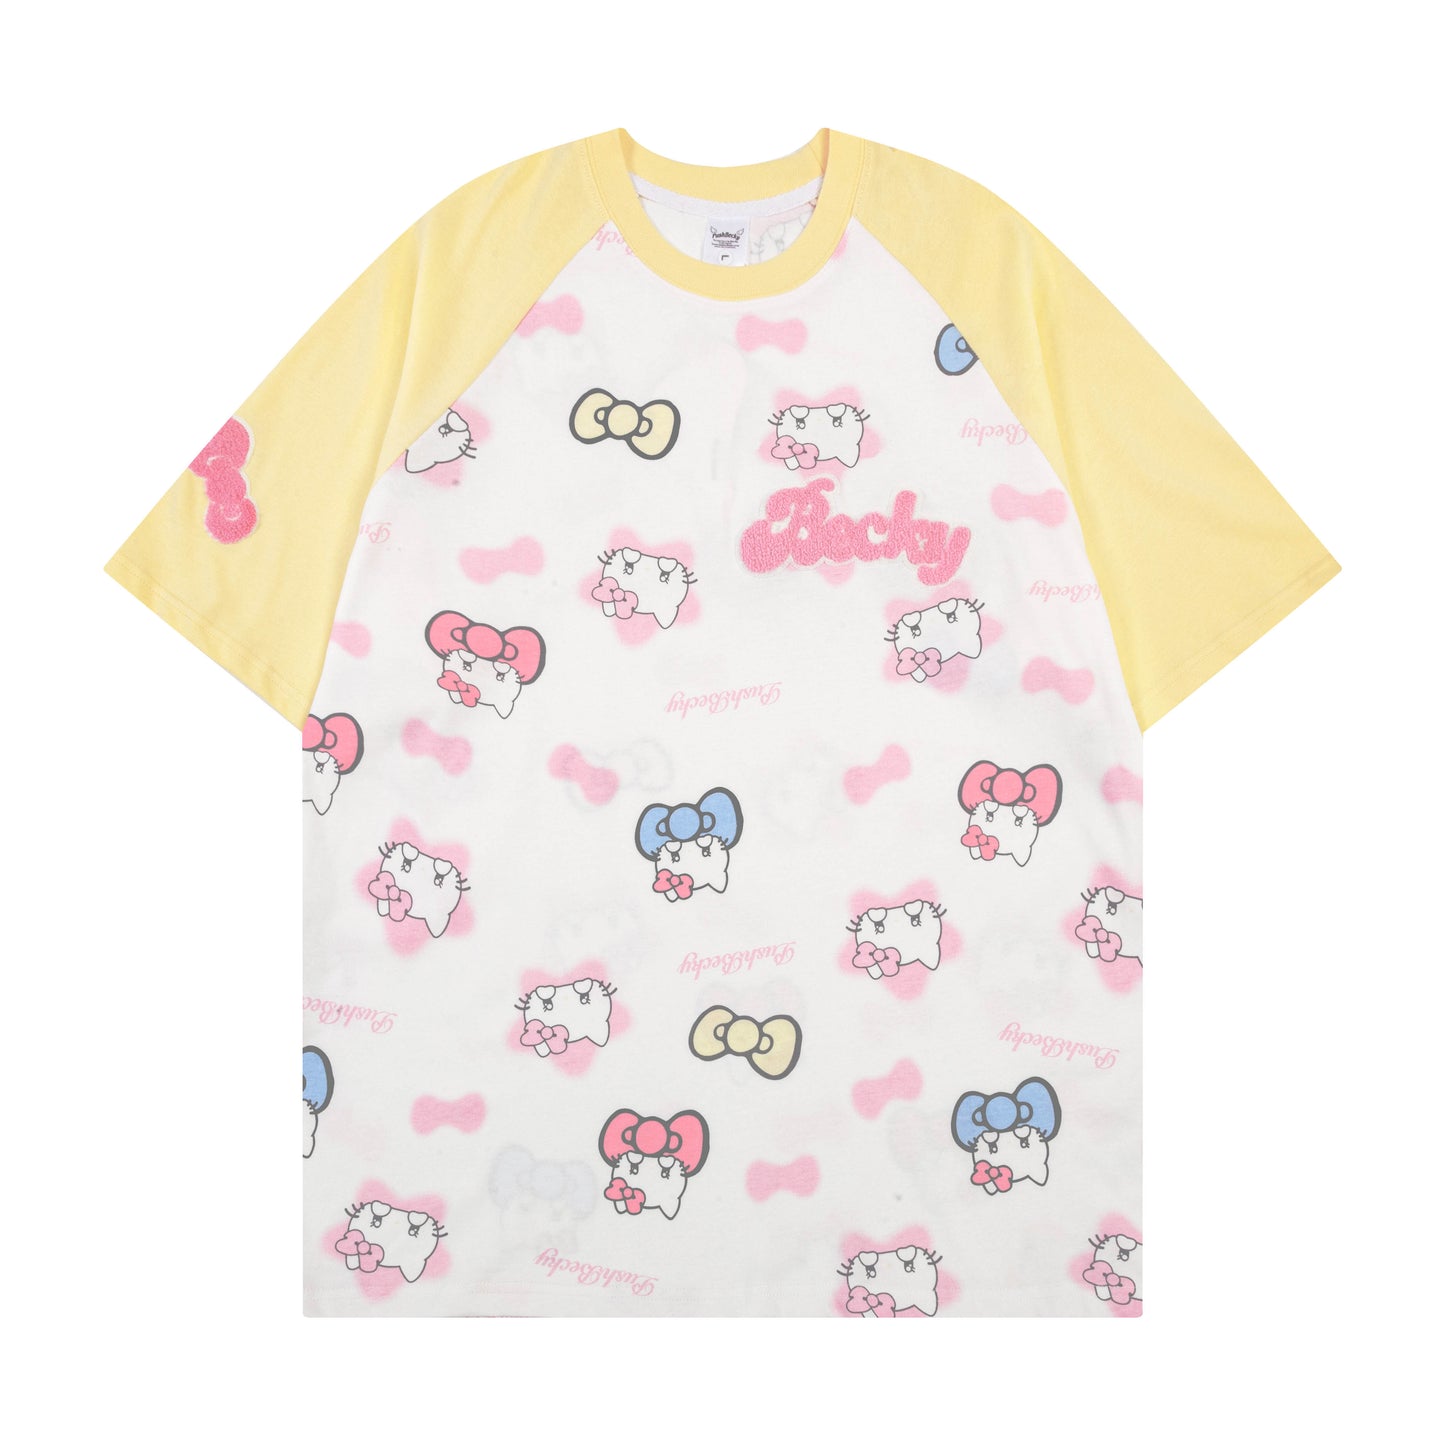 Hellokitty Raglan Sleeve Cute Short Sleeve Tee Casual Summer T Shirt Top